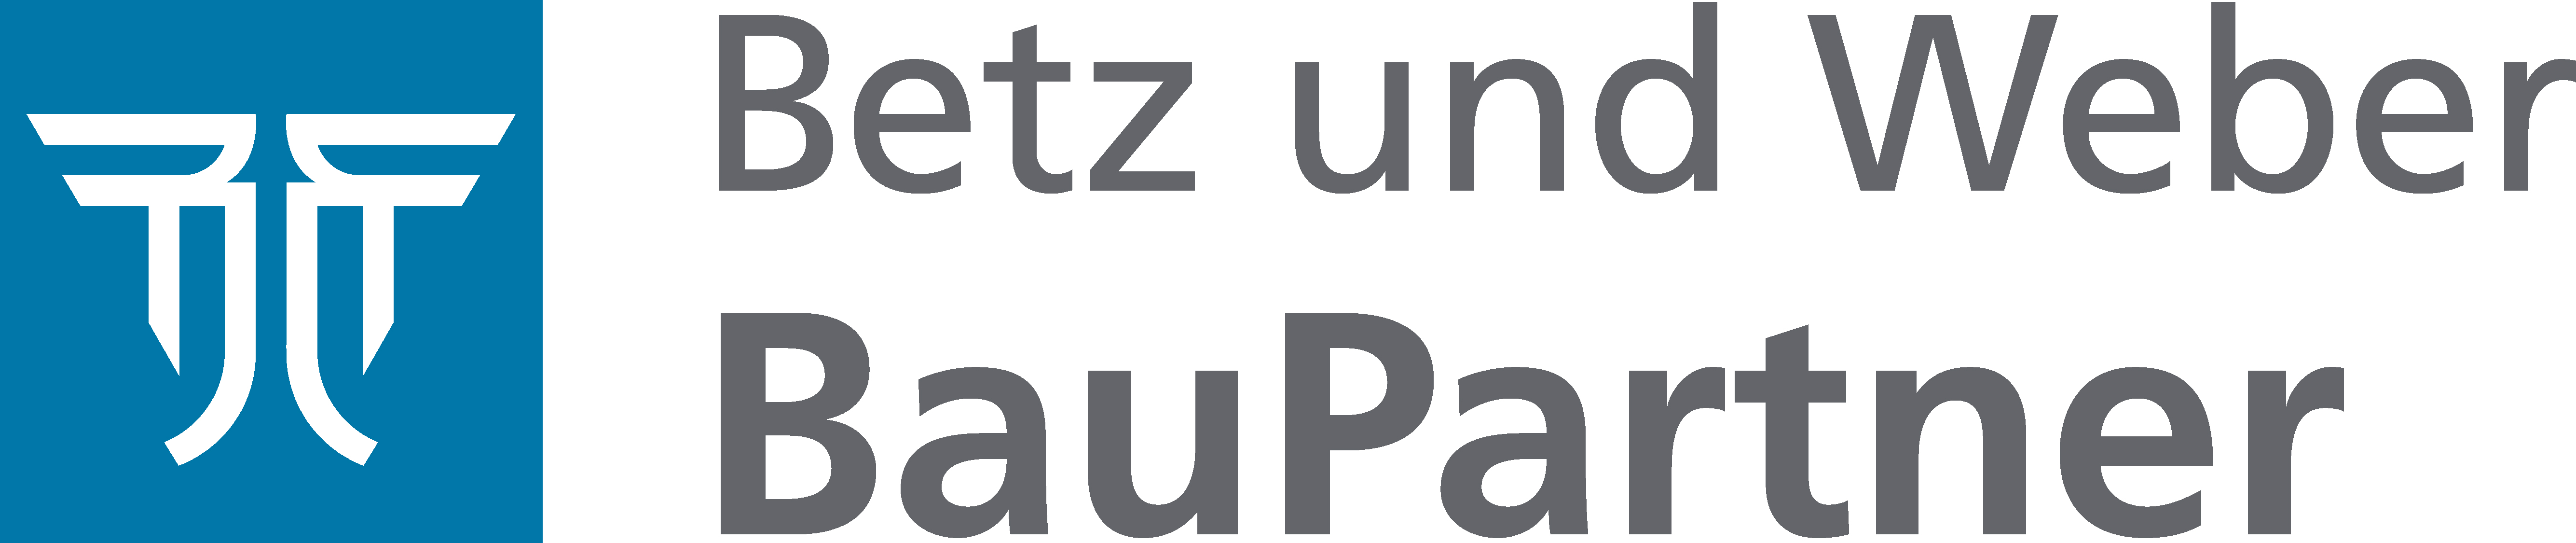 Logo Betz und Weber